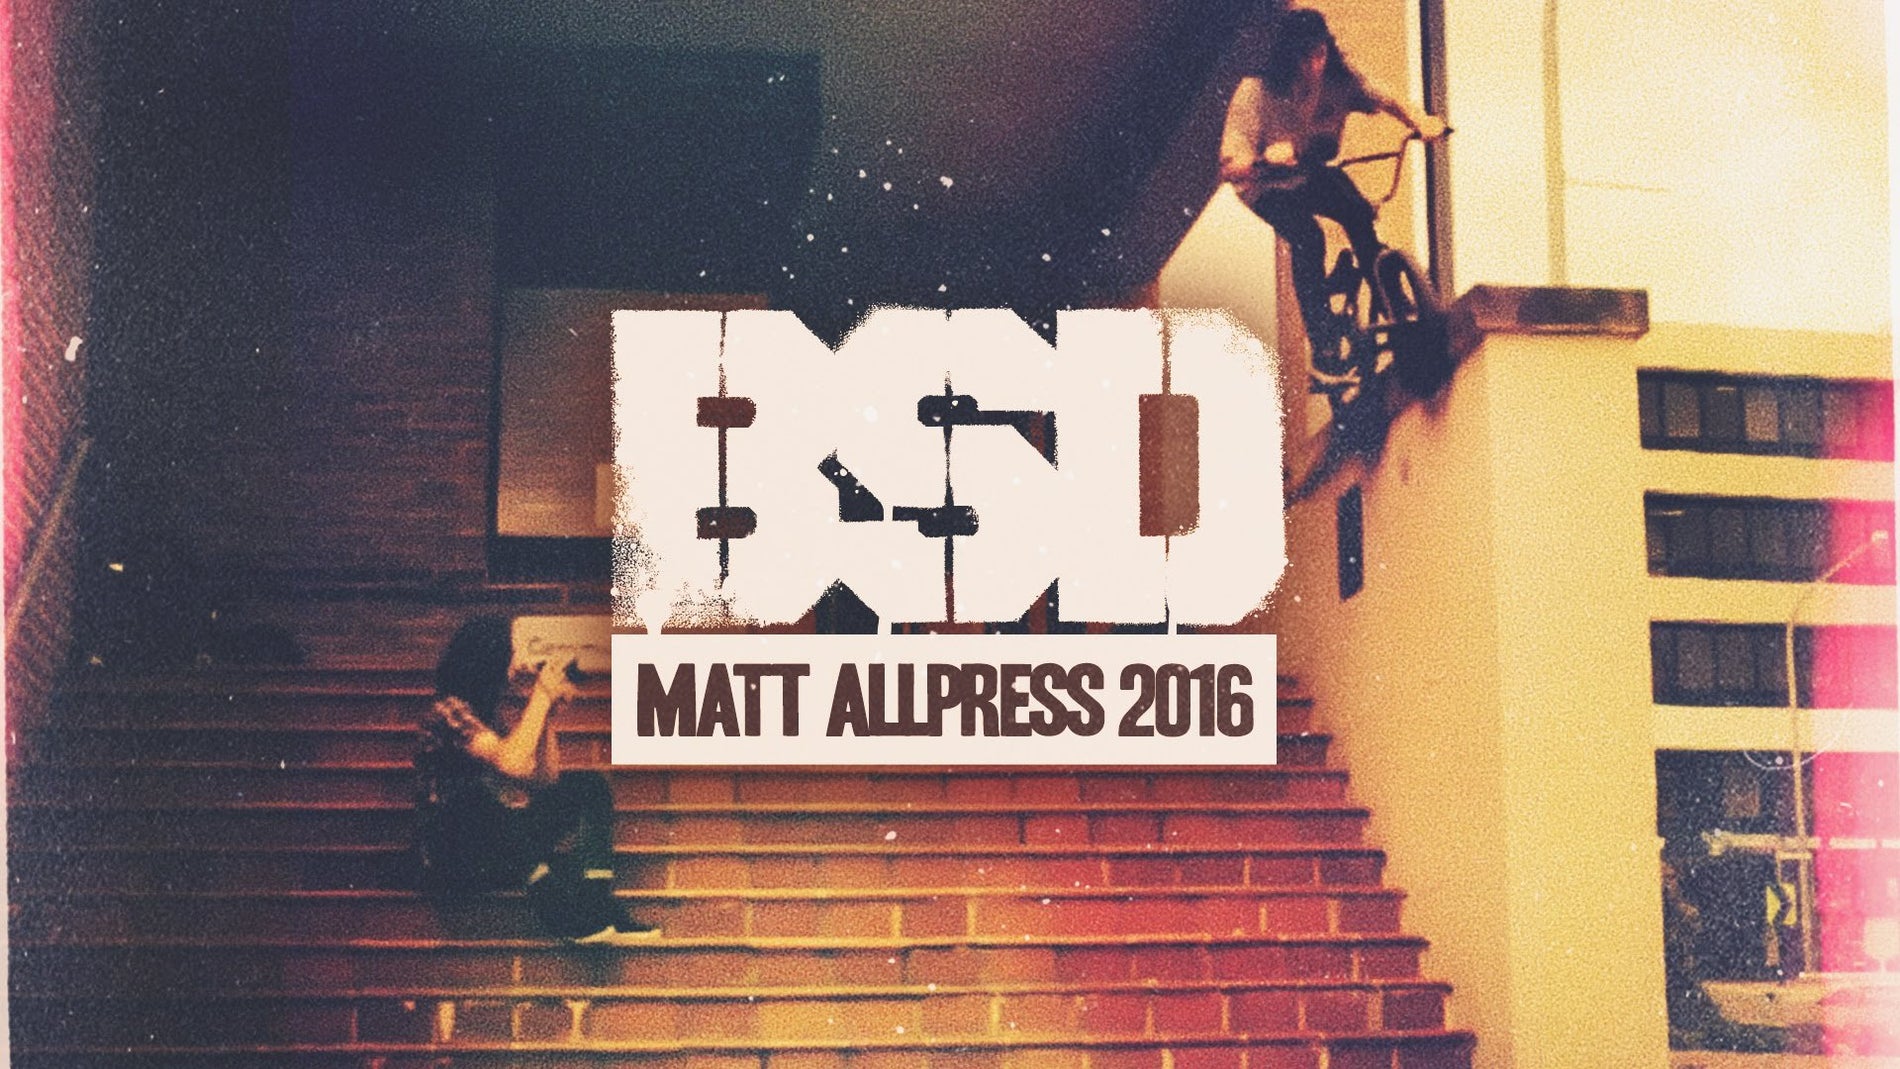 Matt Allpress 2016